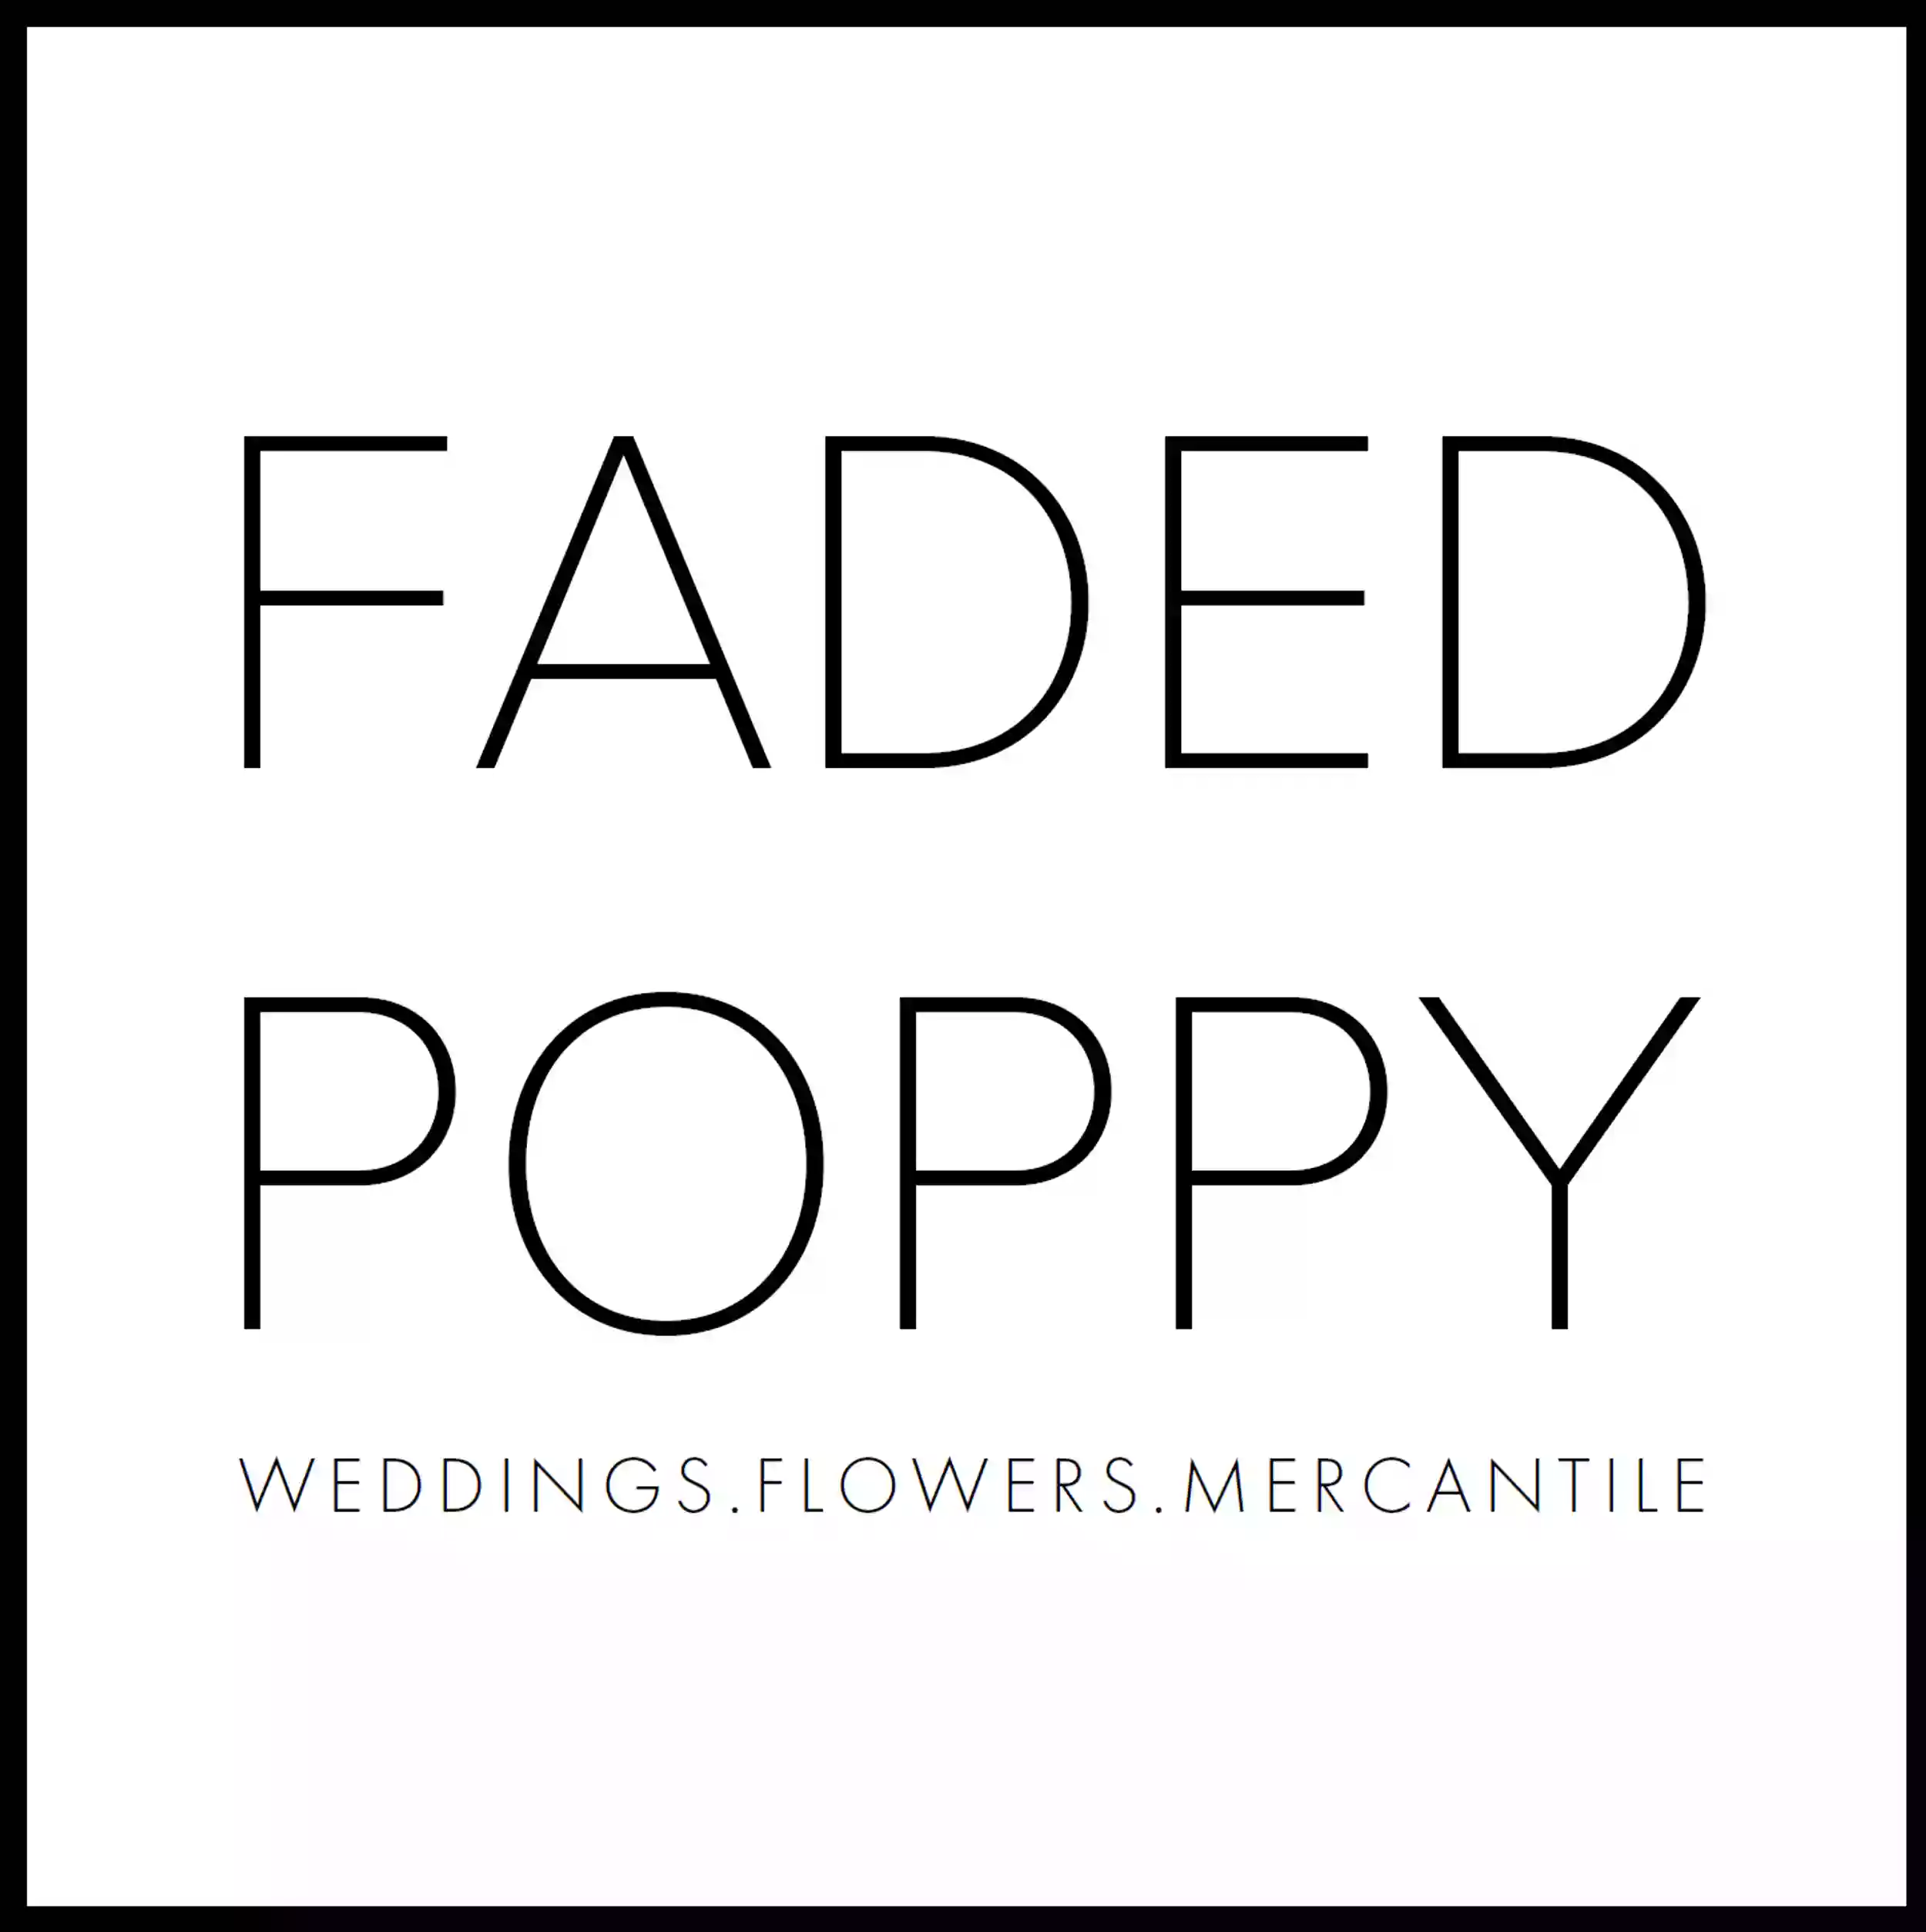 The Faded Poppy